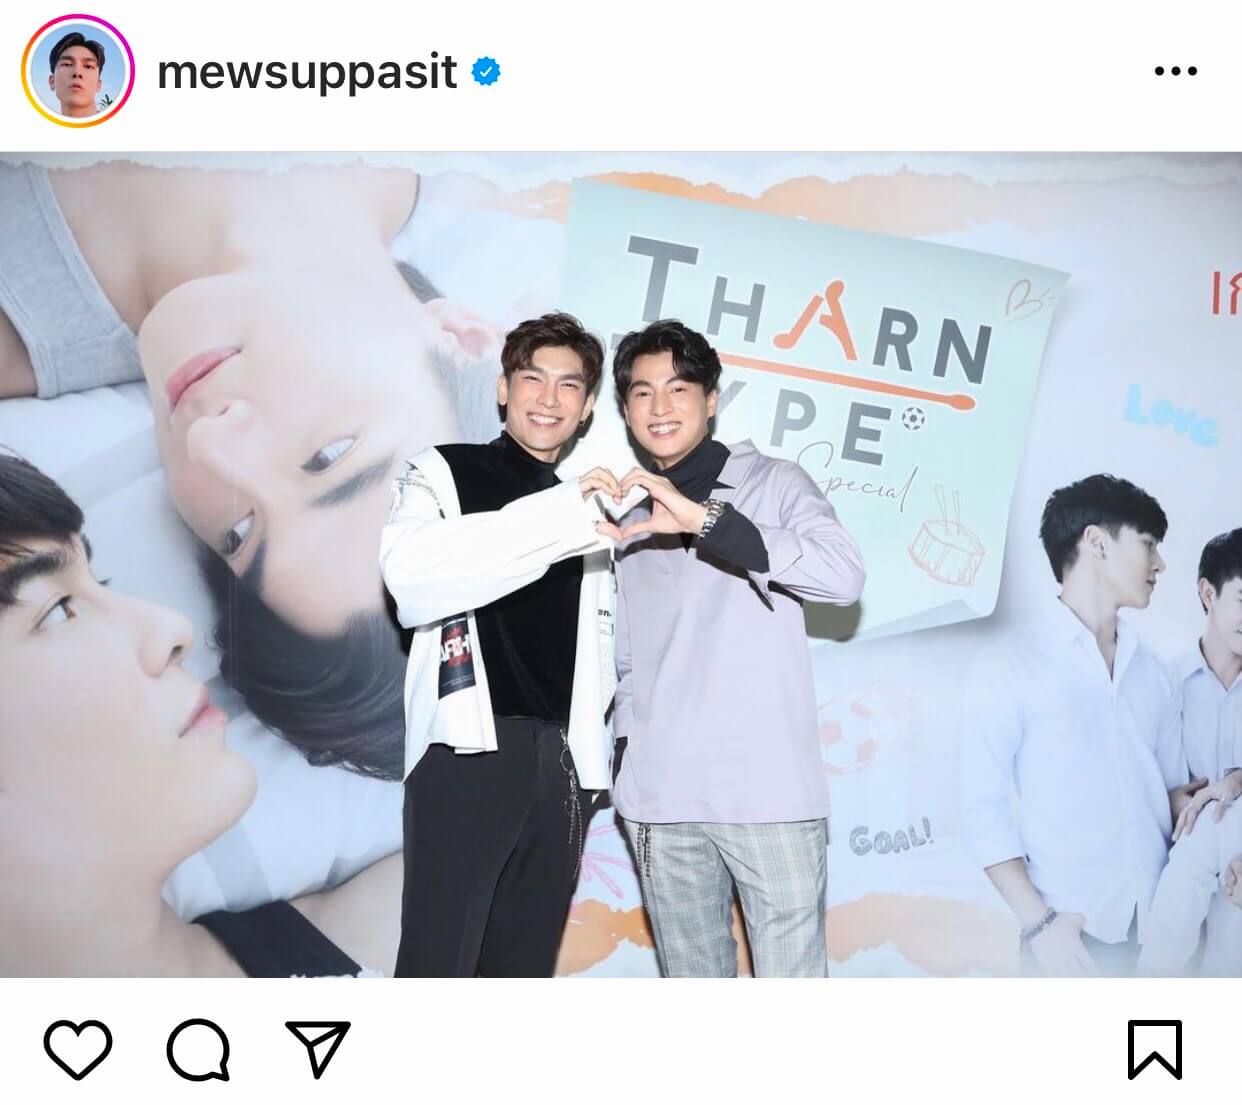 Mew Suppasit rajoute un poste Instagram afin de présenter le film TharnType